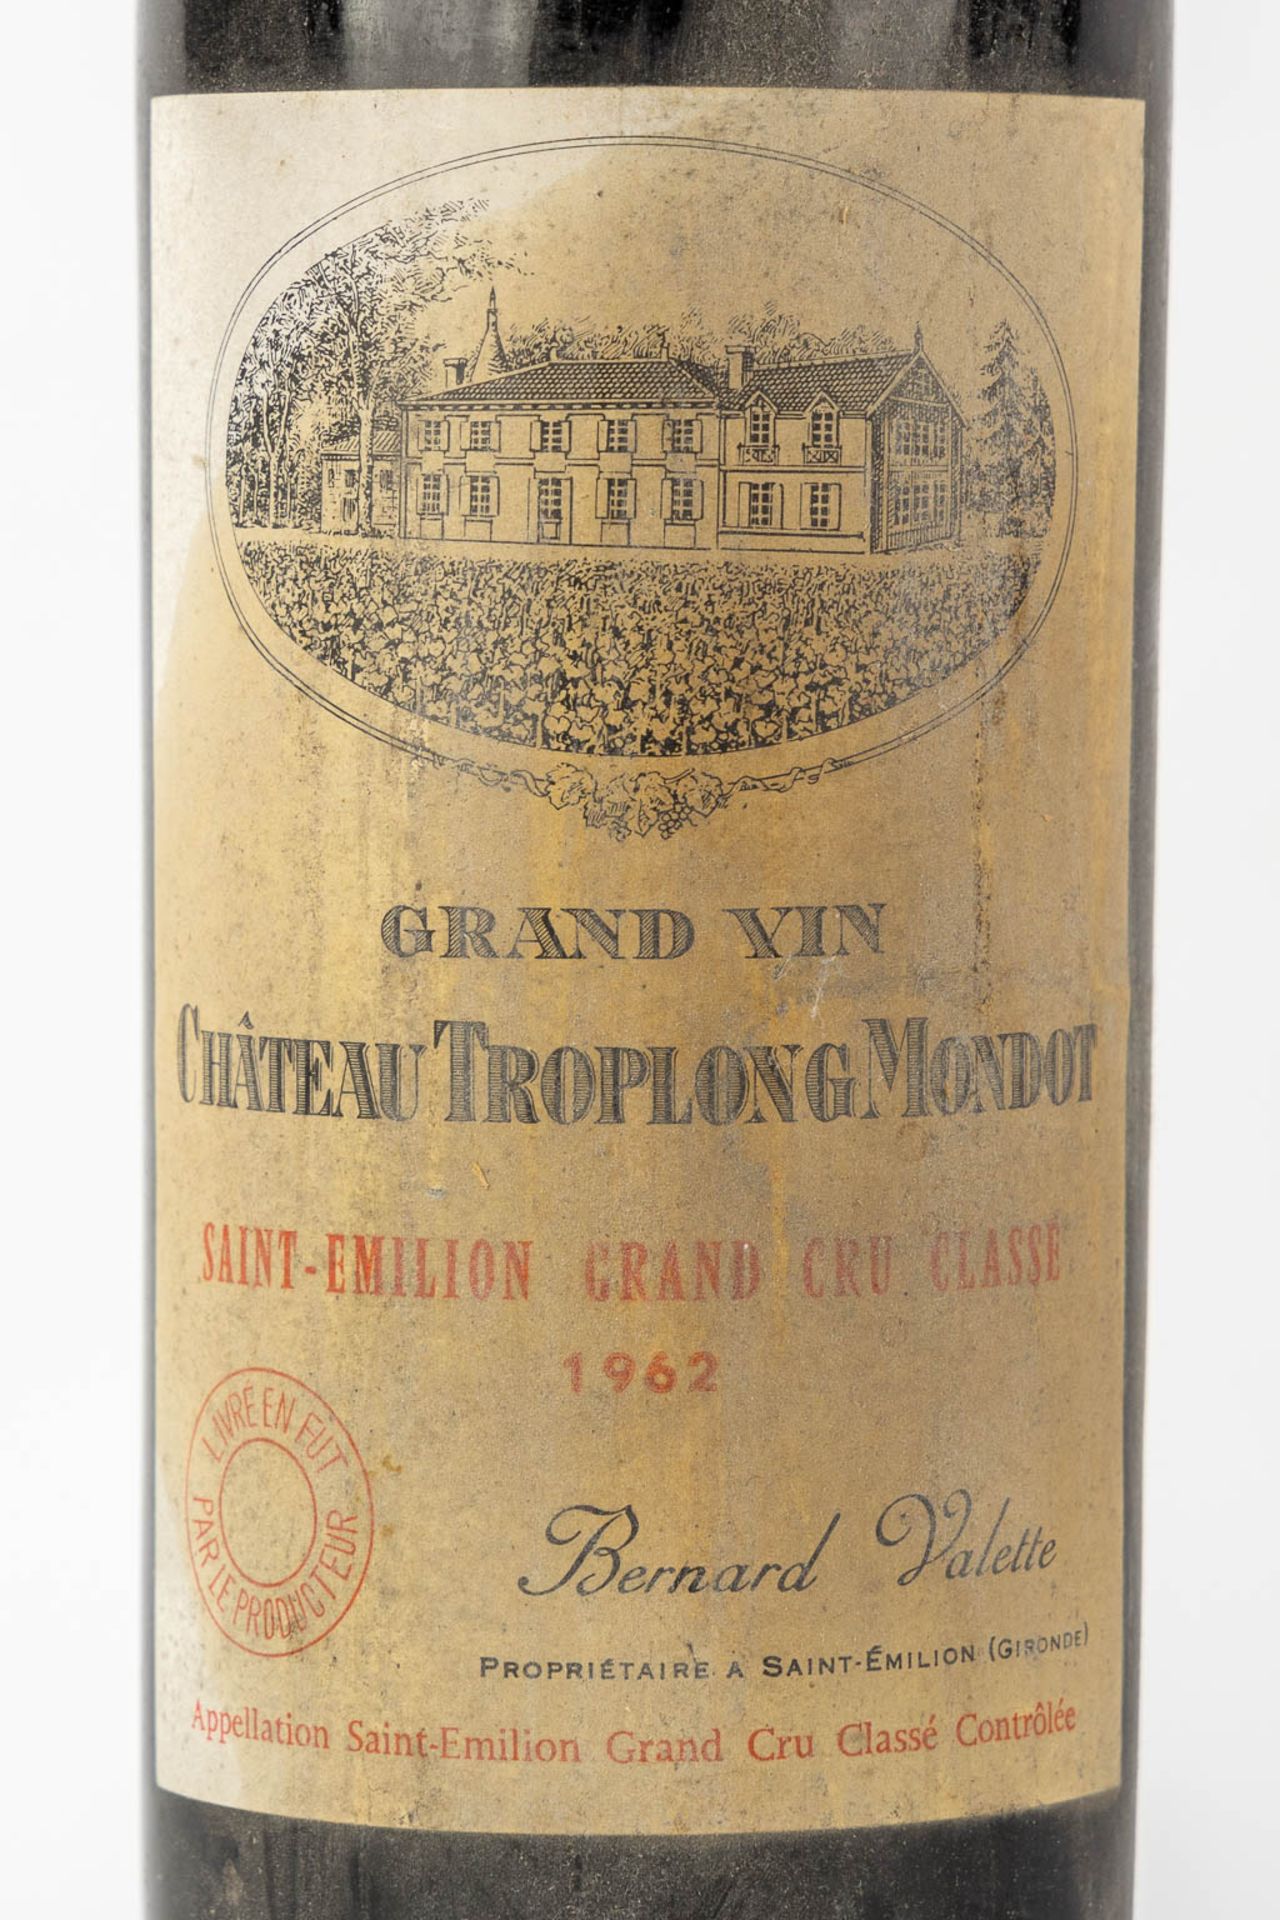 6 bottles wine, Chateau l' Evangile, Chateau Margaux, Chateau Troplong Mondot en 3 bottles sauternes - Bild 5 aus 9